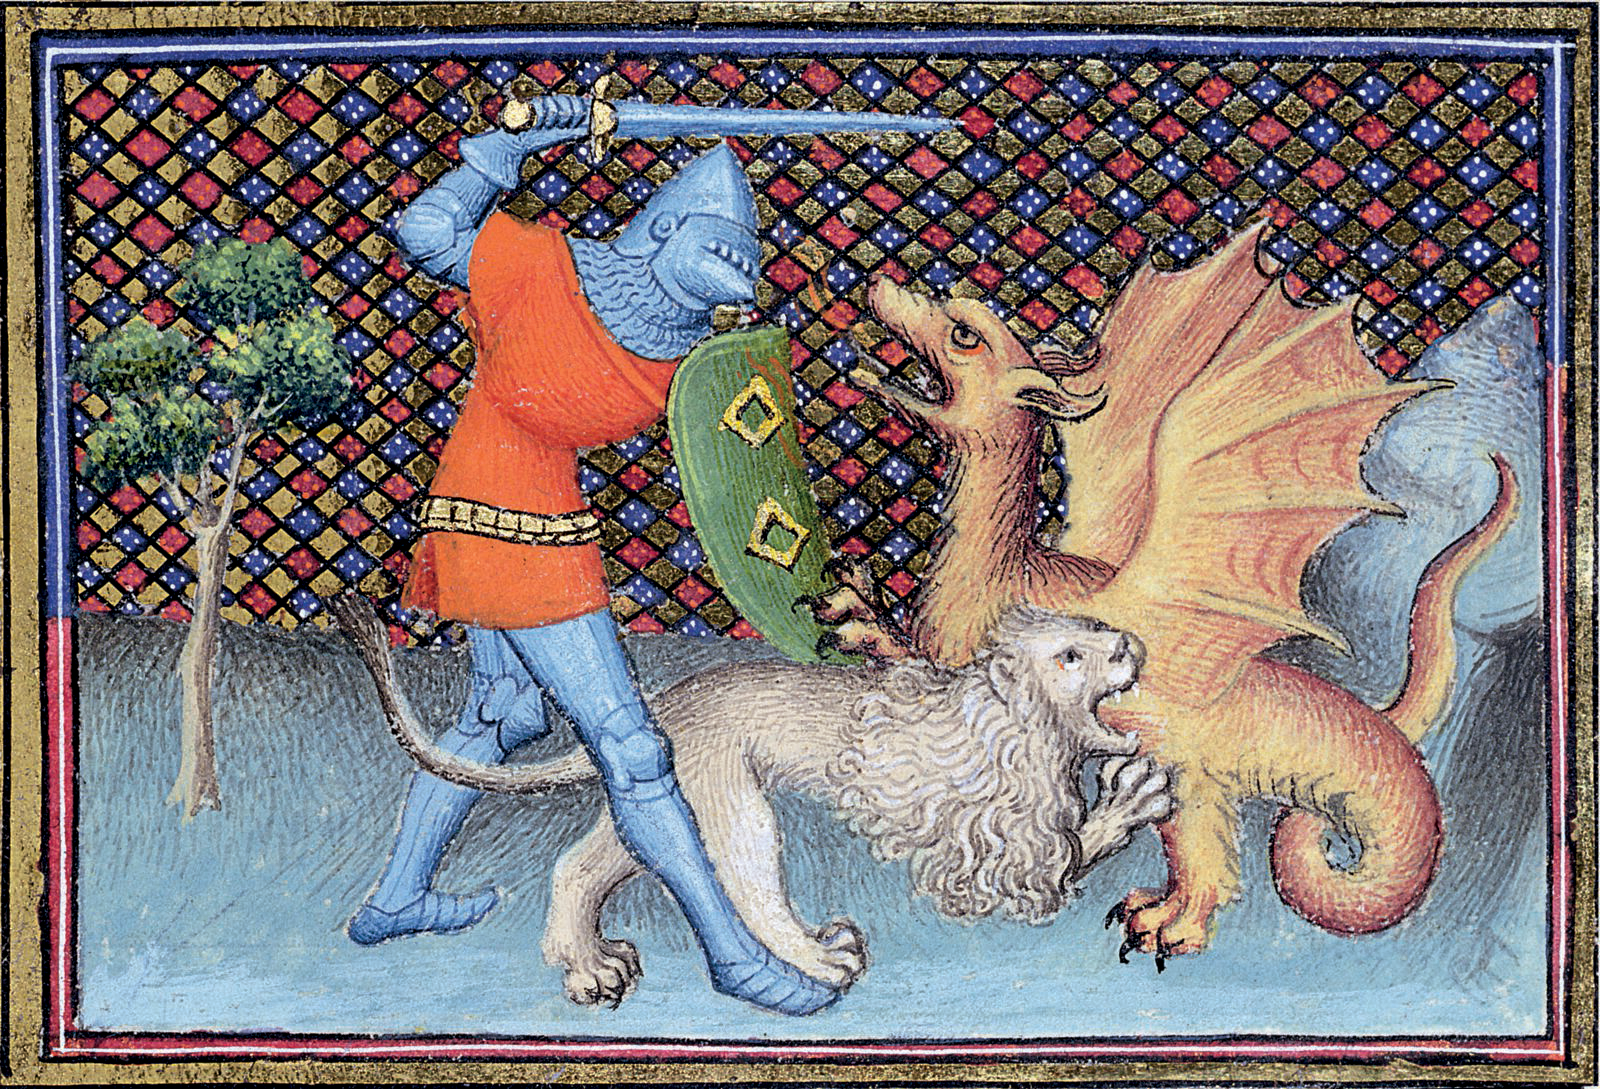 Iluminura. À esquerda, uma pequena árvore e um cavaleiro vestindo uma armadura de metal e uma túnica curta da cor vermelha, segurando um escudo verde numa mão e uma espada na outra. Ele está atacando um dragão, à direita. Abaixo do homem, um leão morde corpo do dragão. O fundo é quadriculado nas cores azul, vermelho e amarelo.